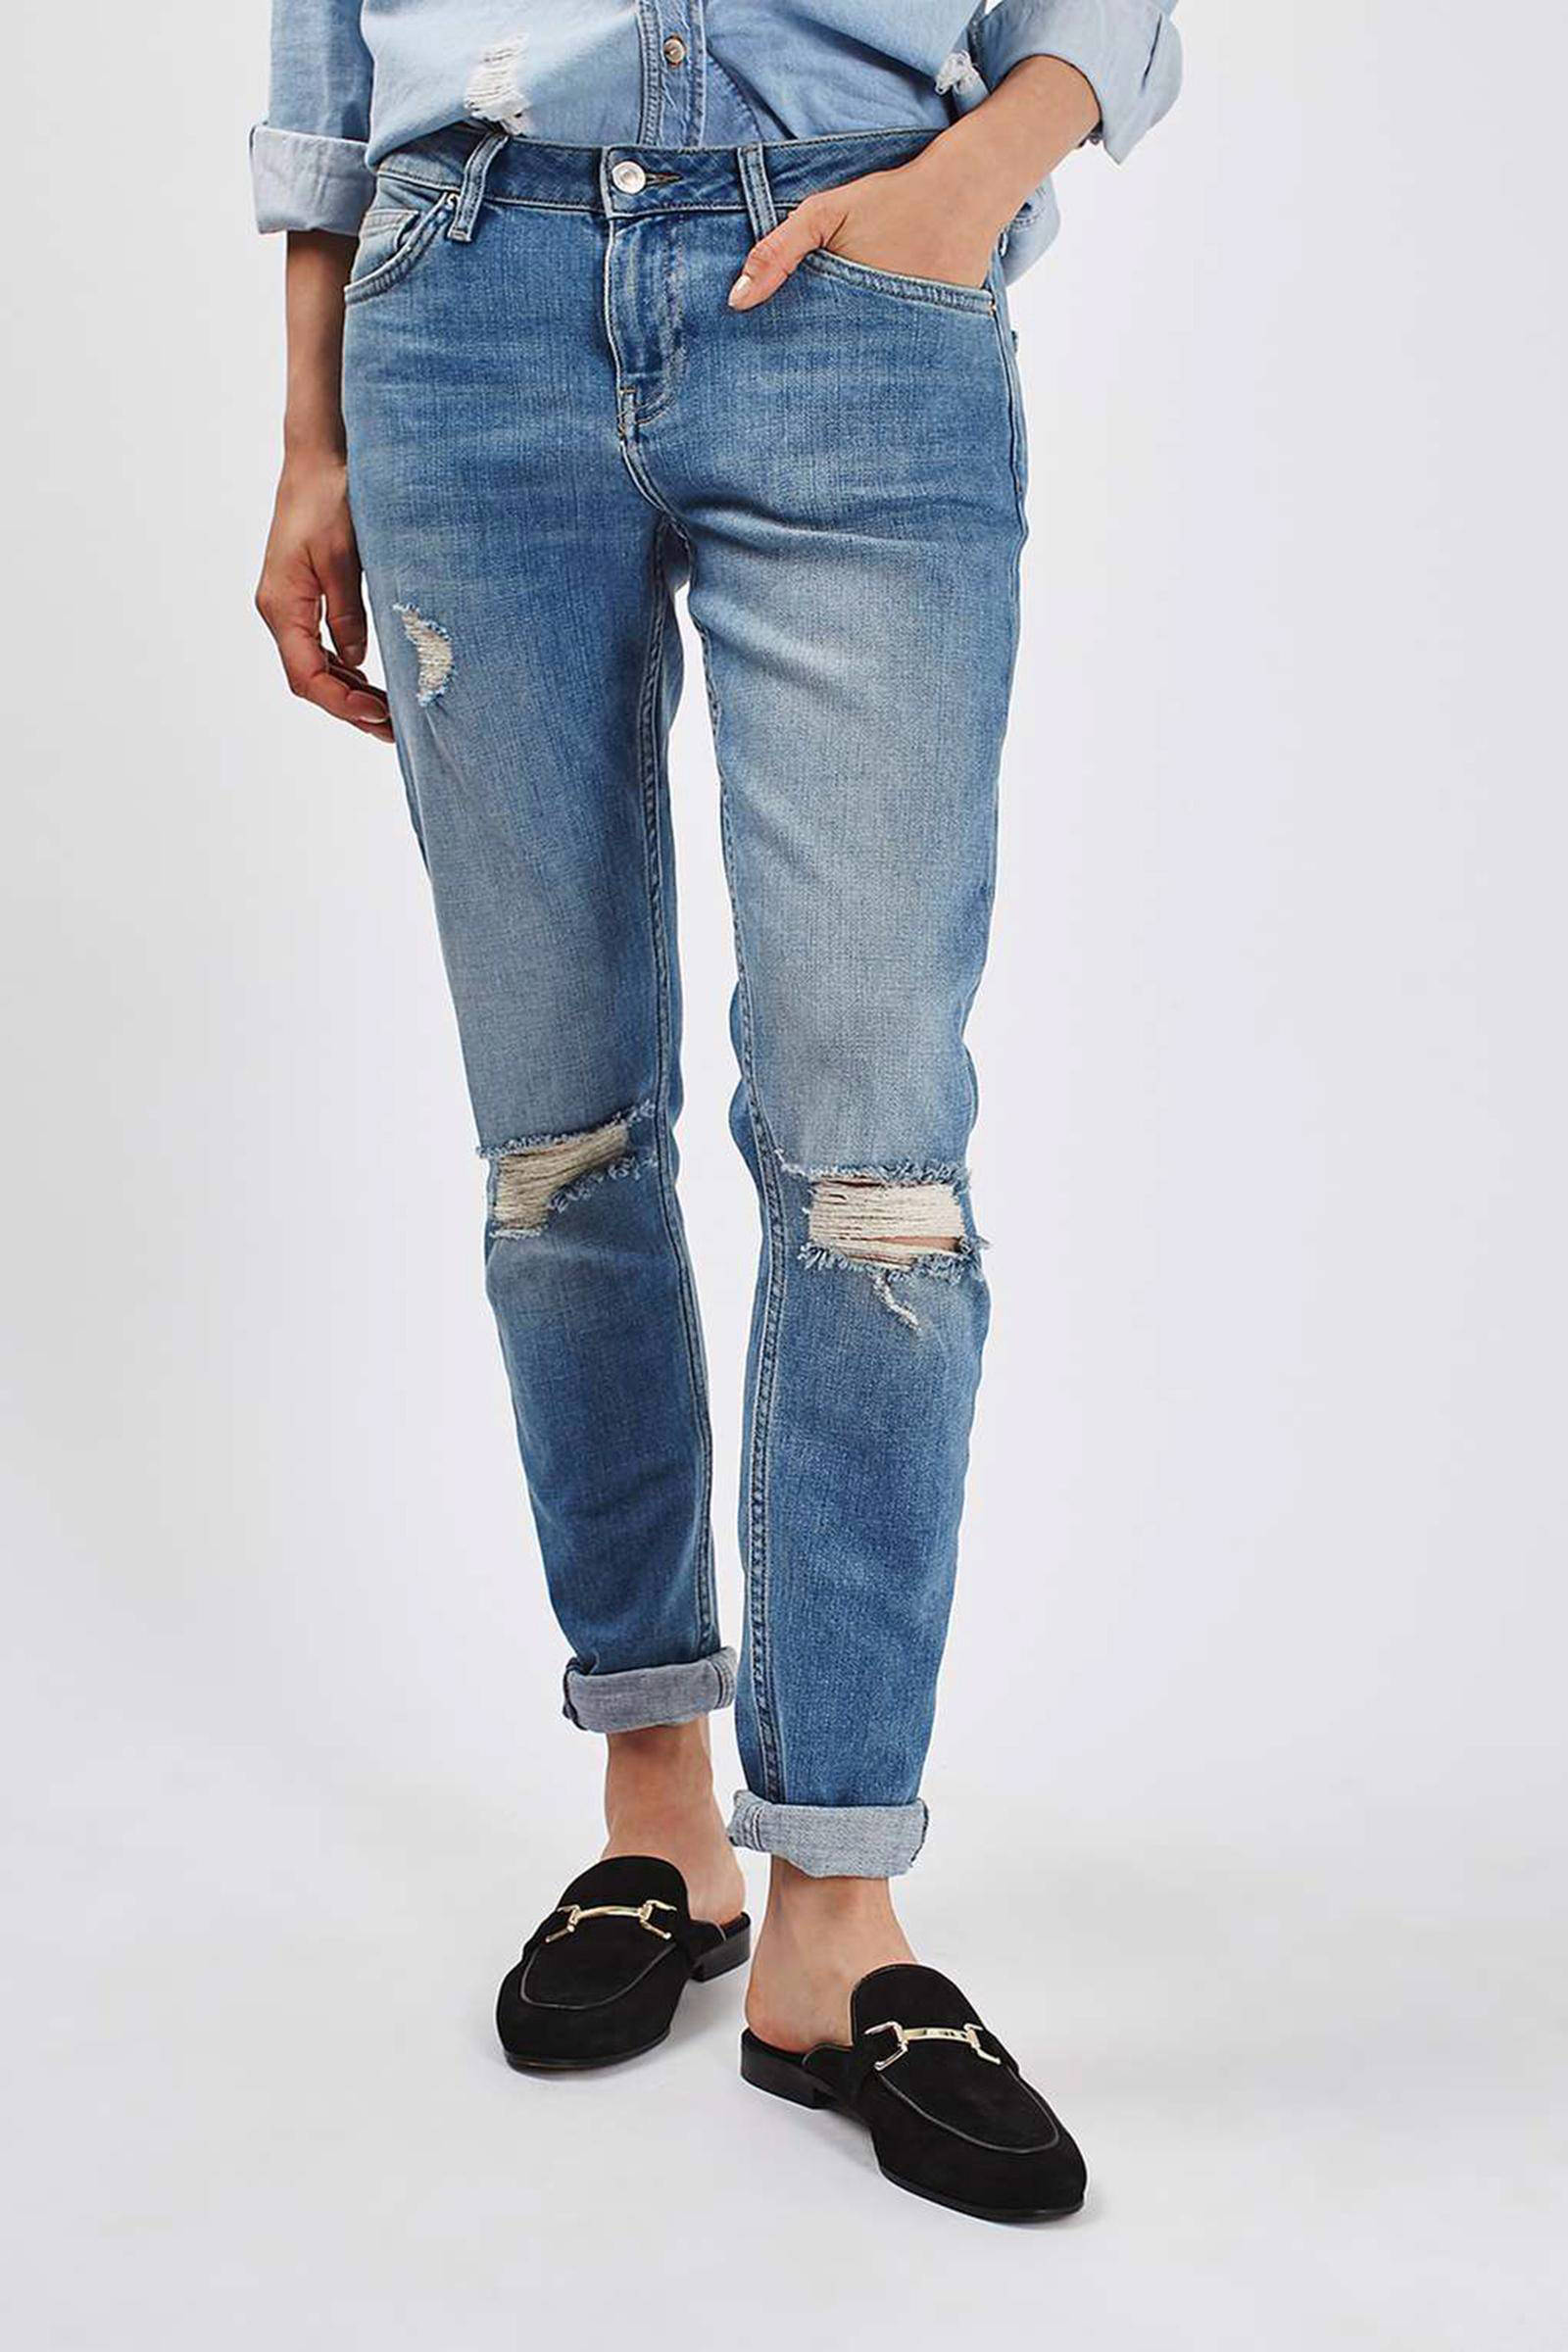 Verwonderlijk Topshop regular ripped jeans | wehkamp OX-91